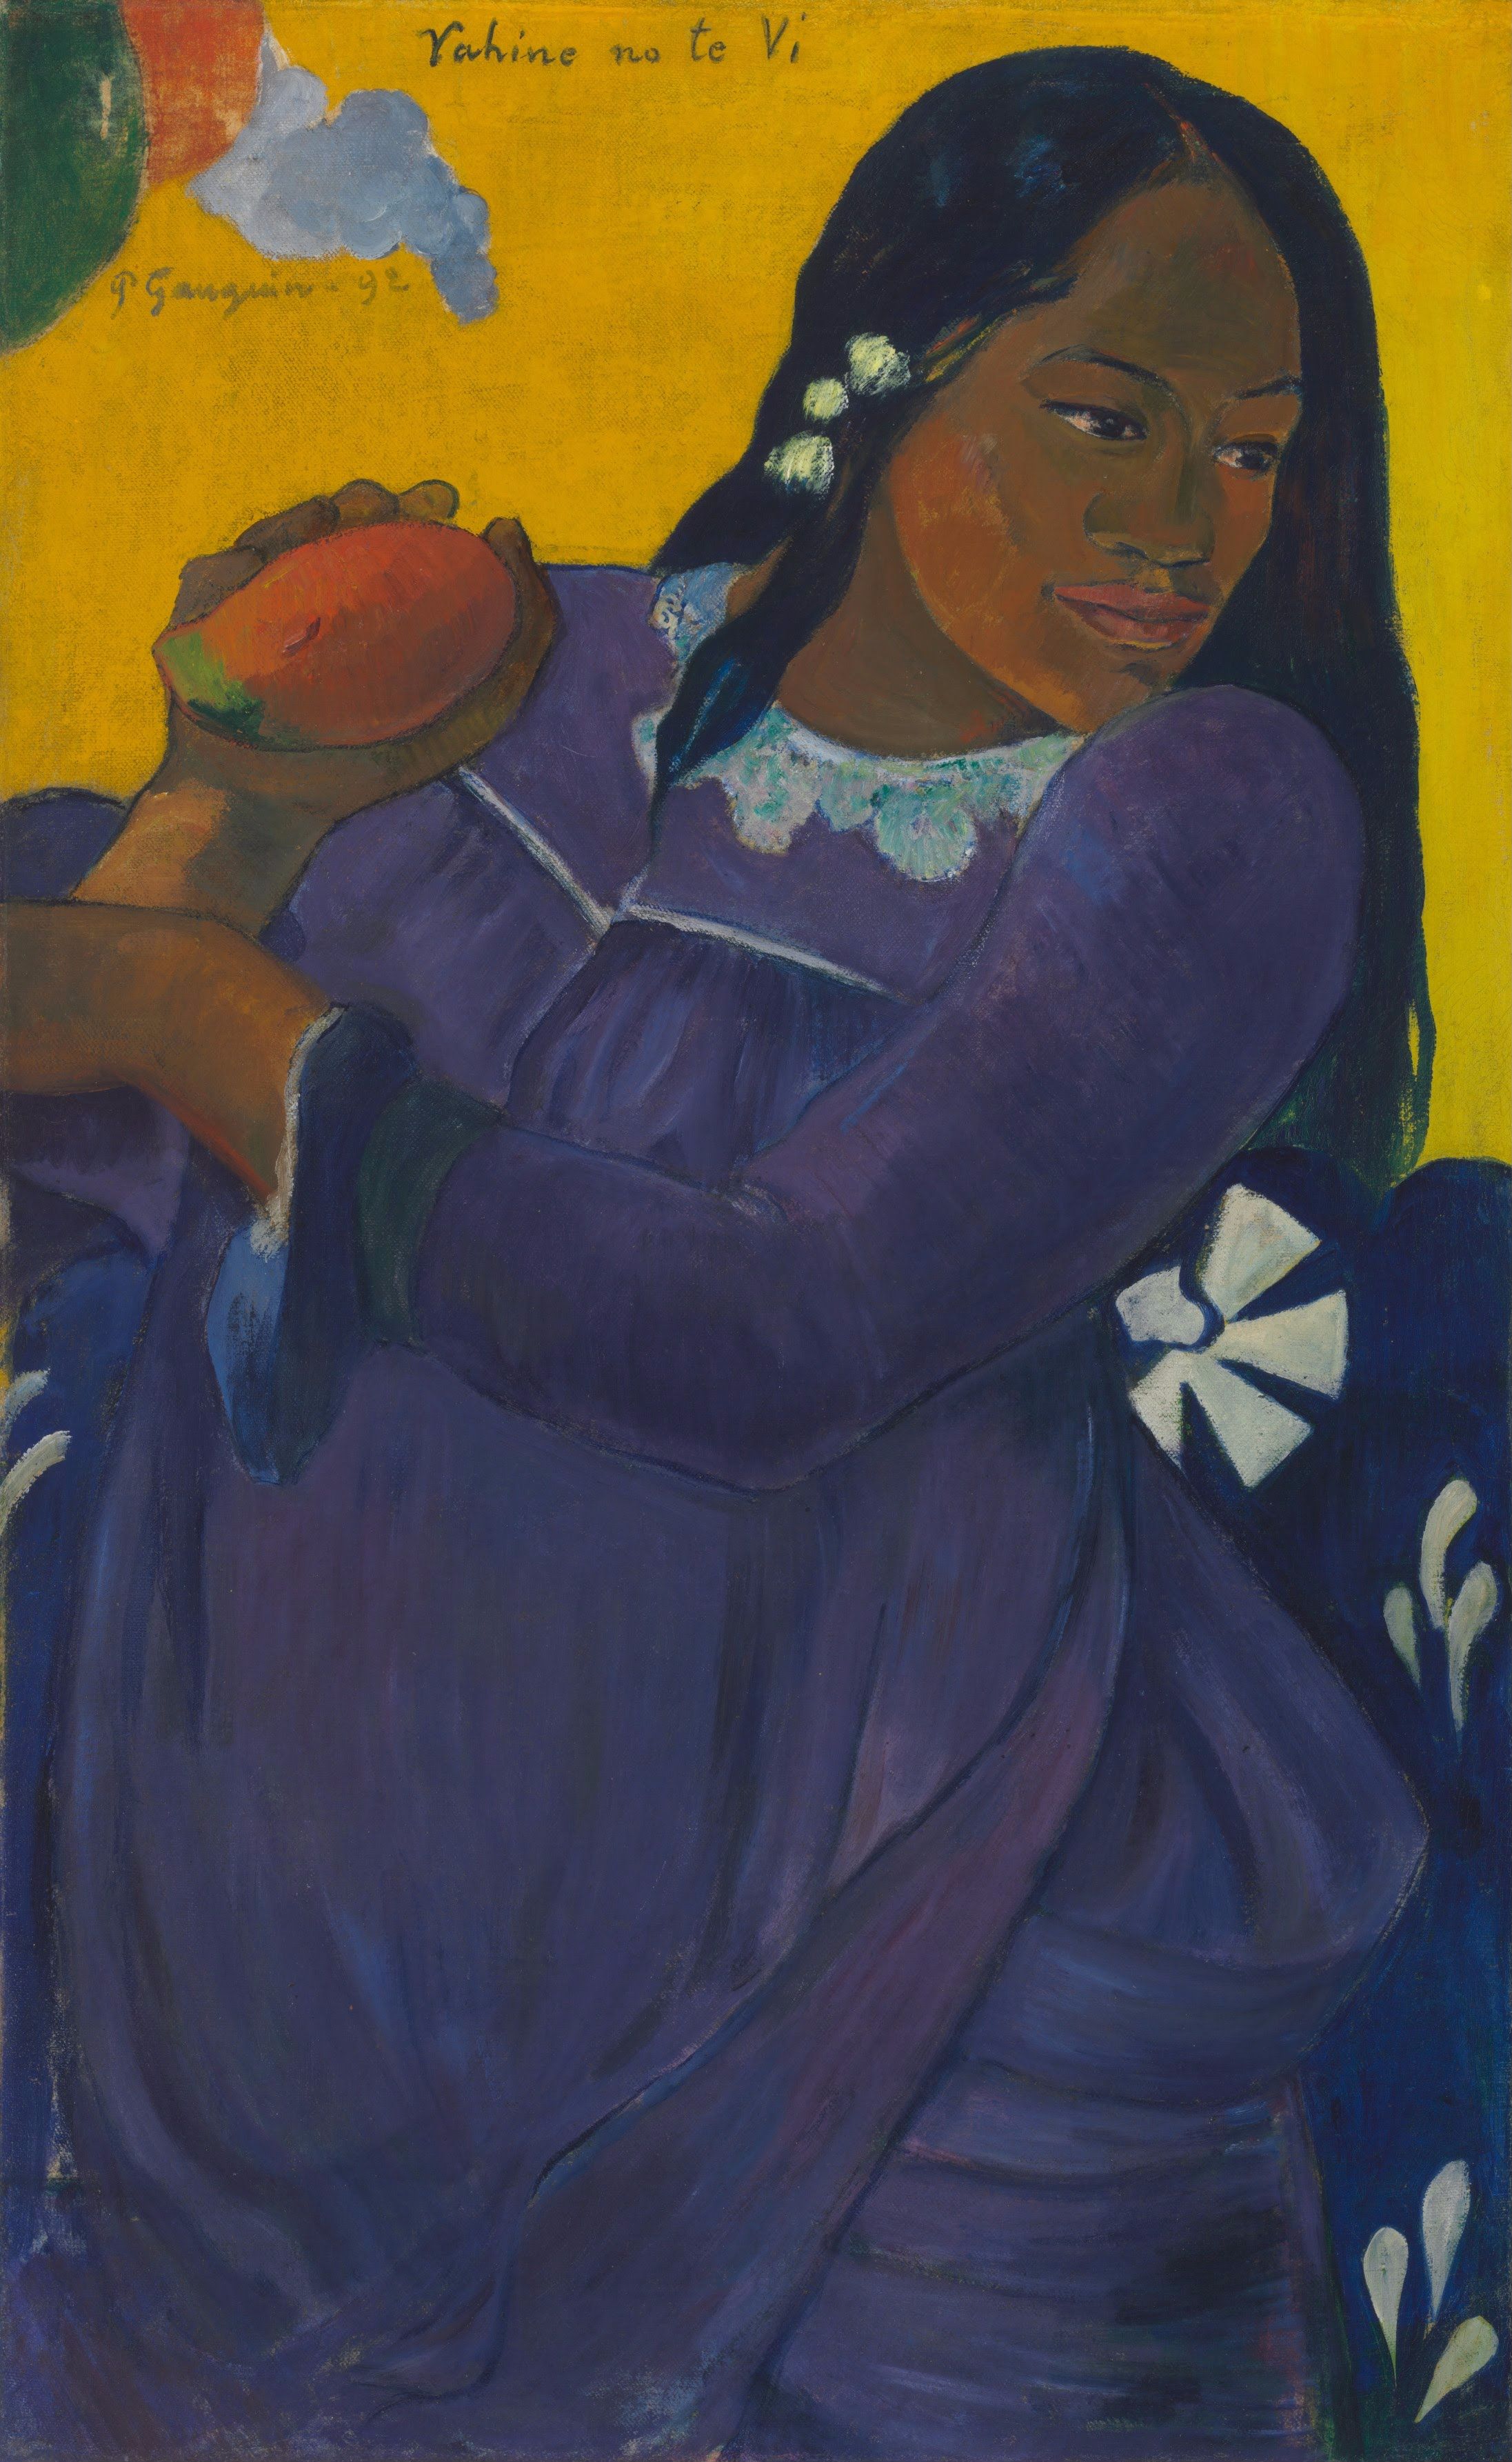 Vahine no te vi (Γυναίκα με μάνγκο) by Paul Gauguin - 1892 - 193.5 x 103 cm 